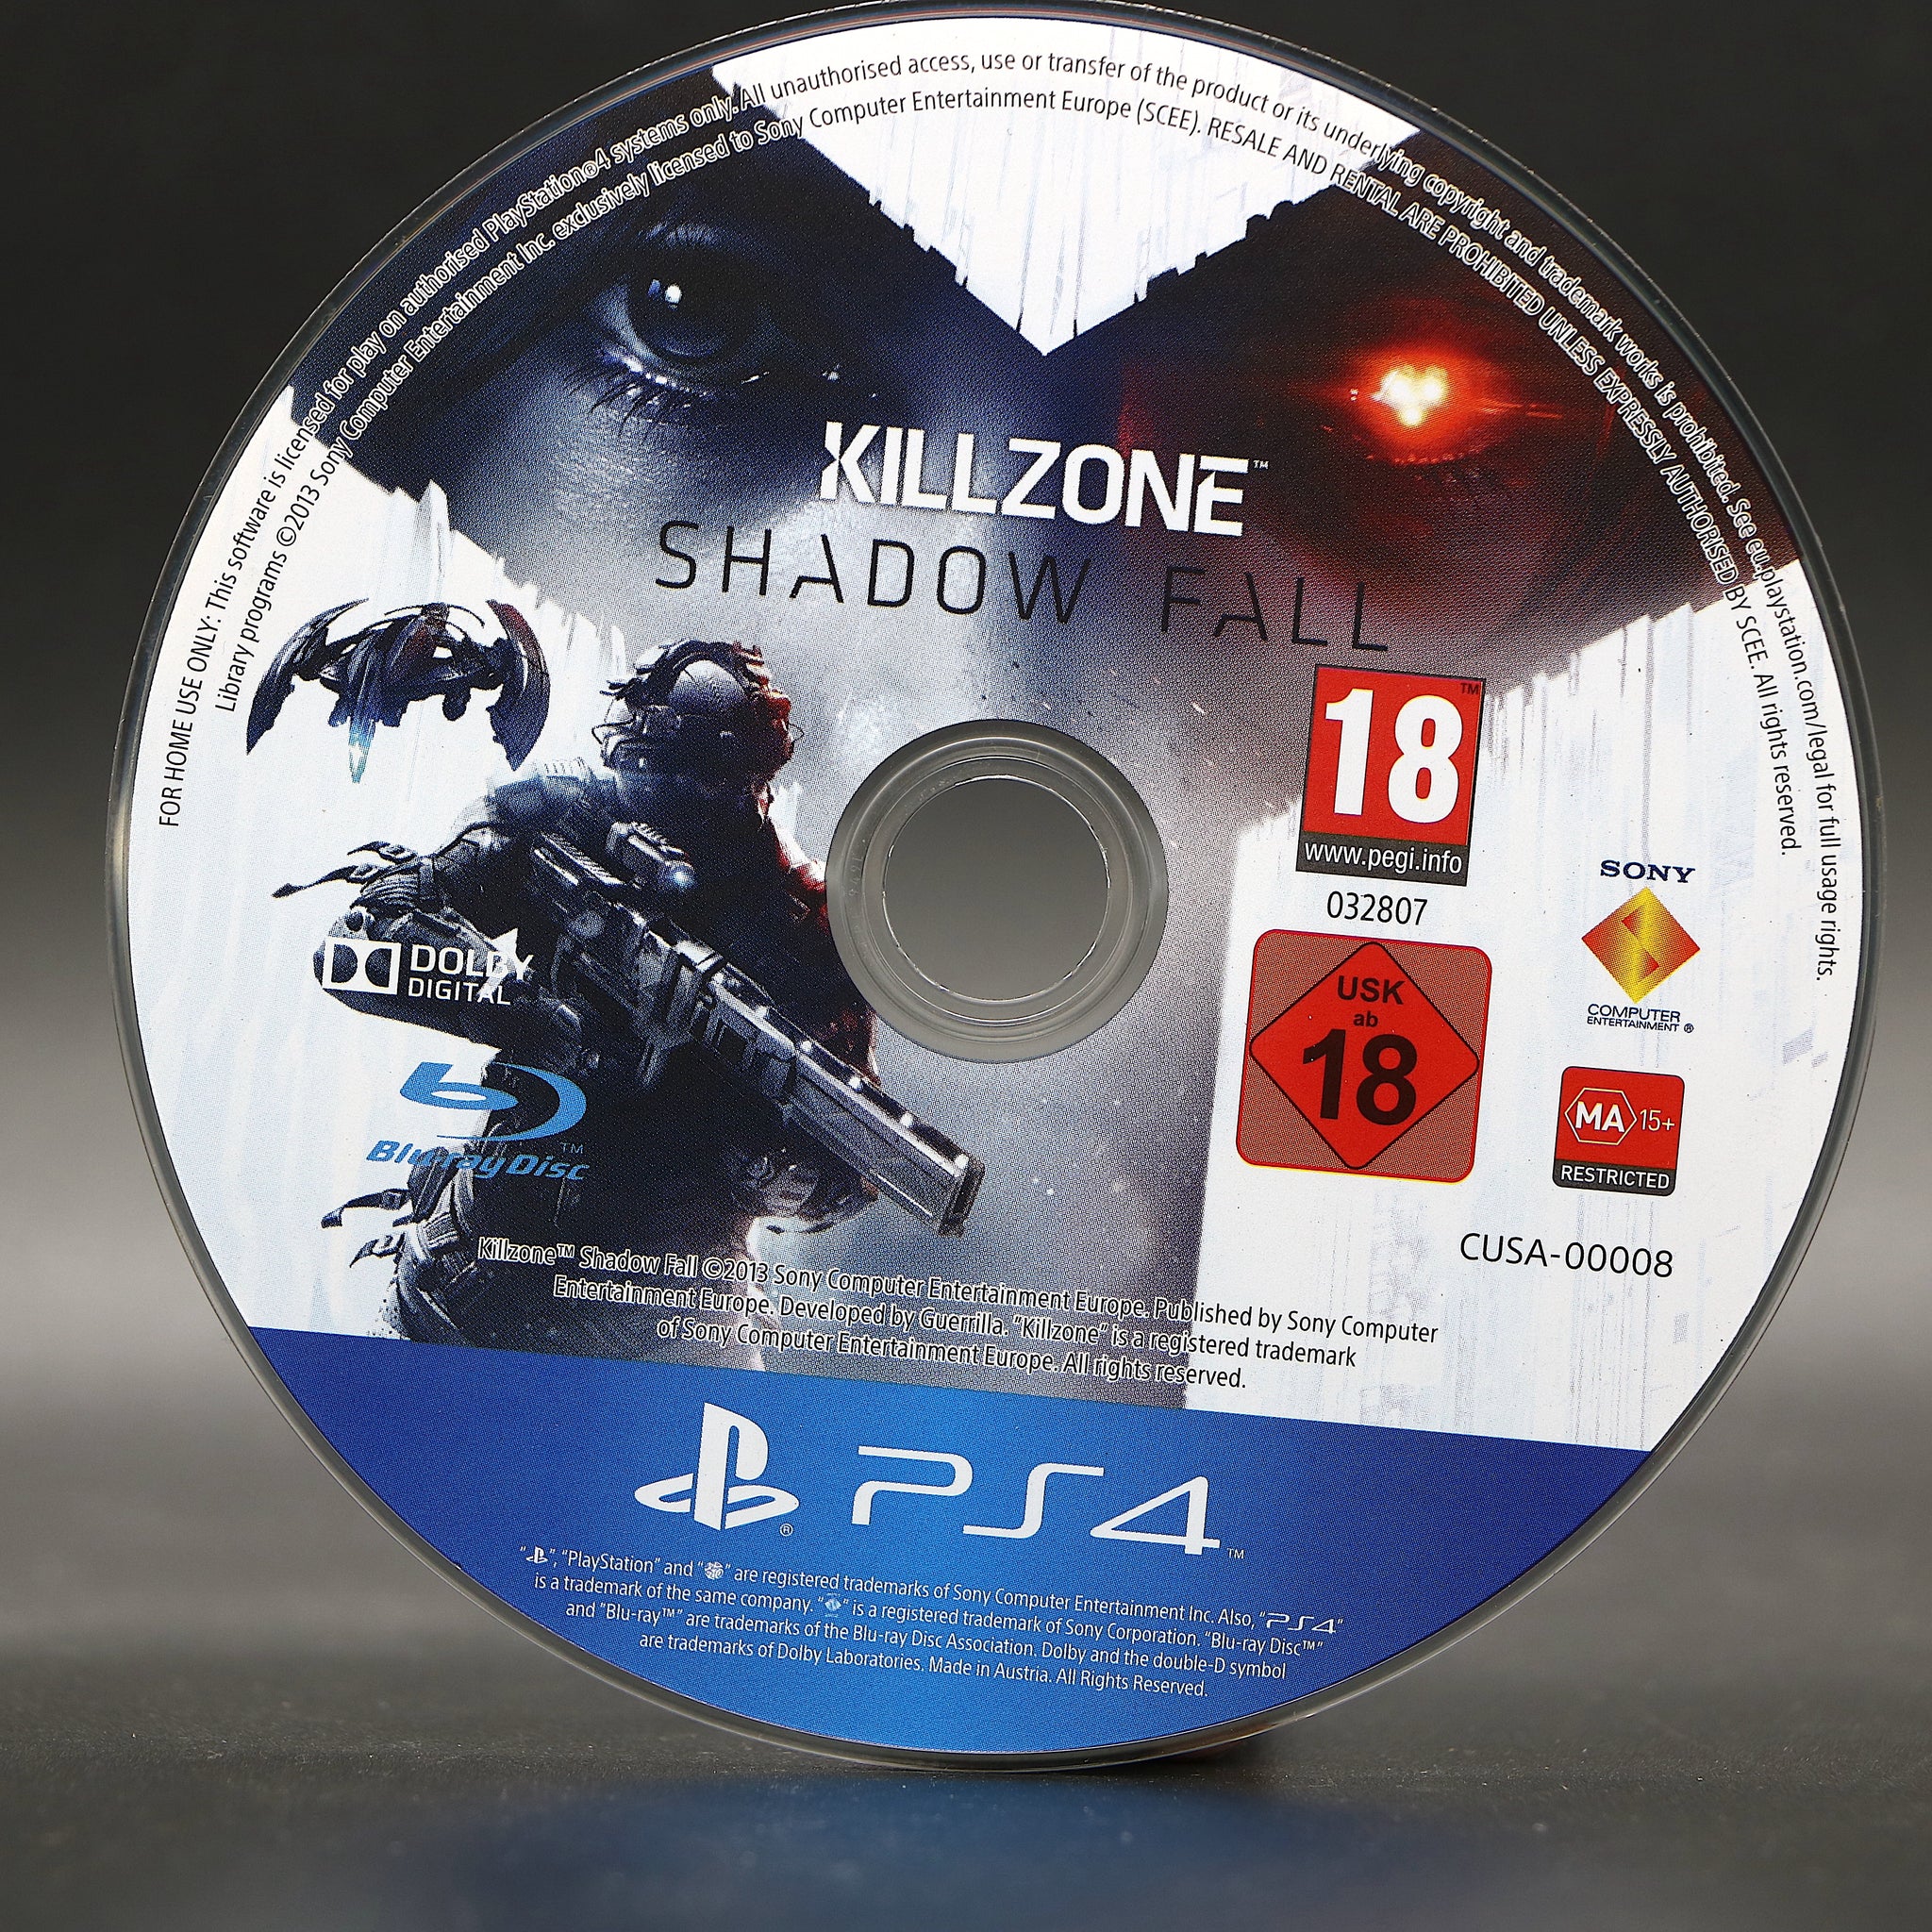 Killzone Shadow Fall [ PlayStation Hits ] (PS4) NEW